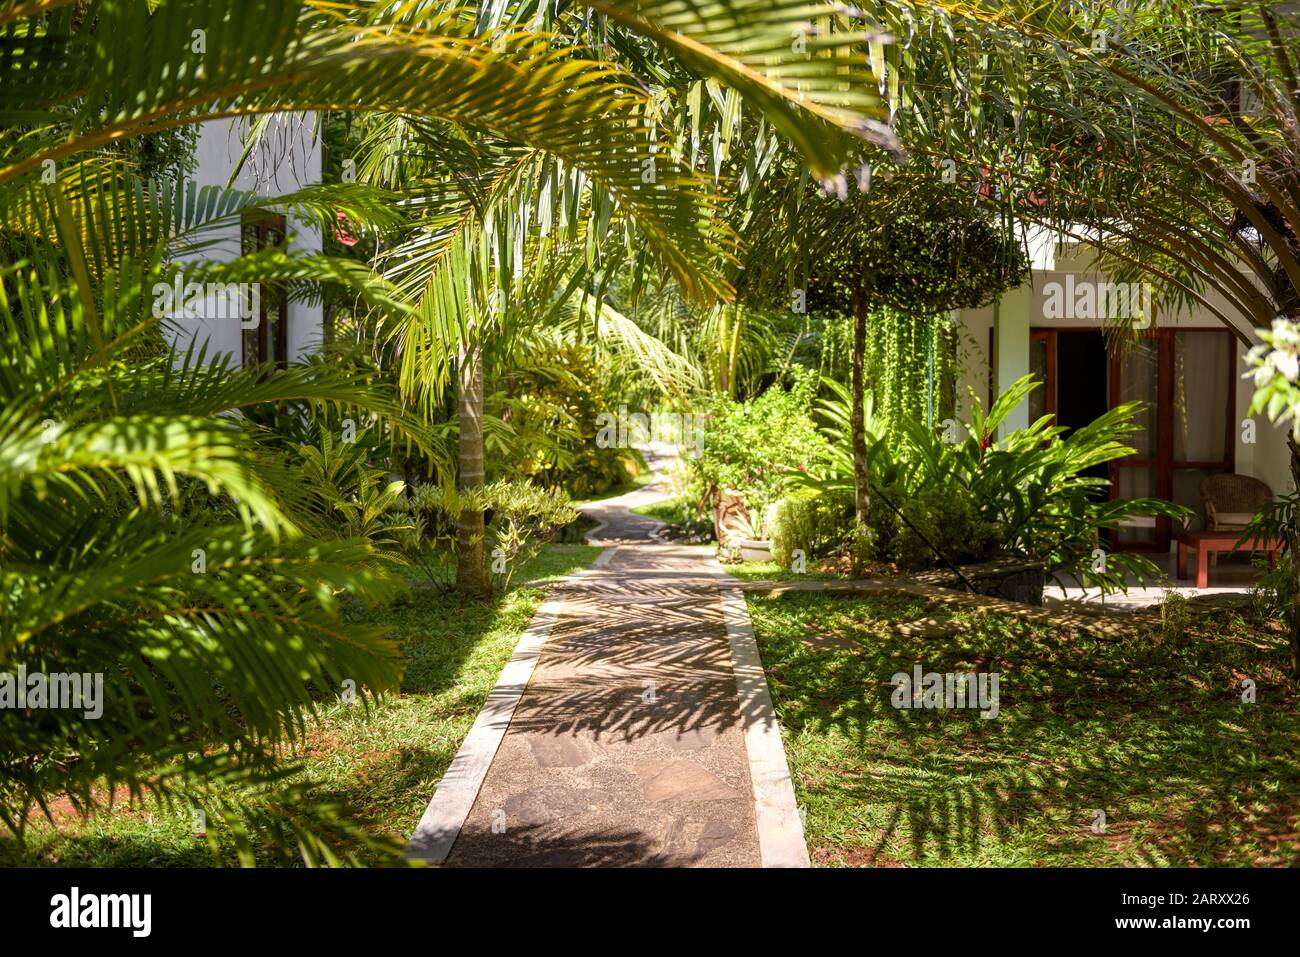 Paesaggio naturale con il percorso in pietra in un hotel tropicale. Giardino paesaggistico in una tropica. Percorso panoramico nel verde. Accogliente percorso alla luce del sole. Foto Stock